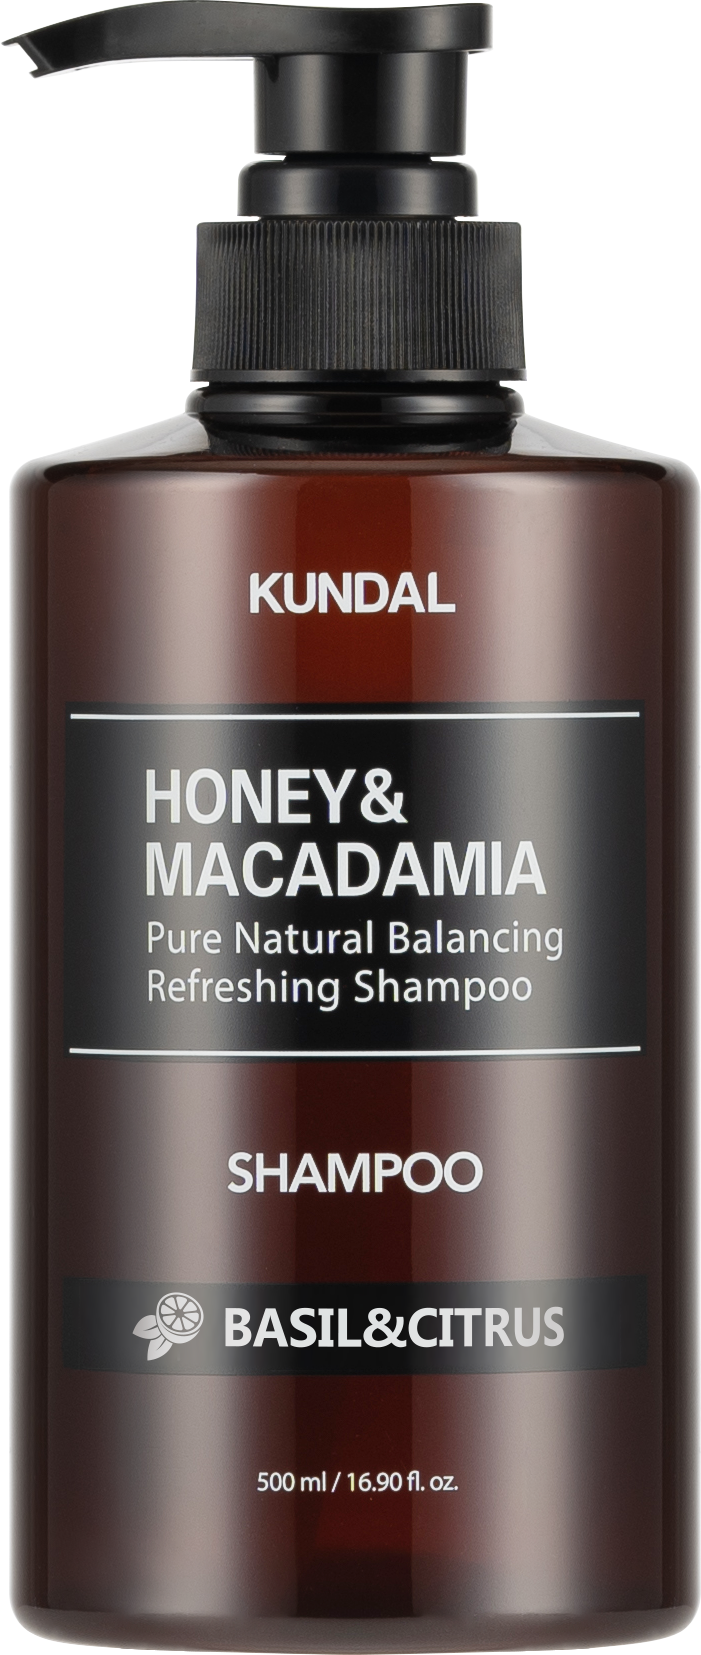 KUNDAL Honey & Macadamia Shampoo 500ml